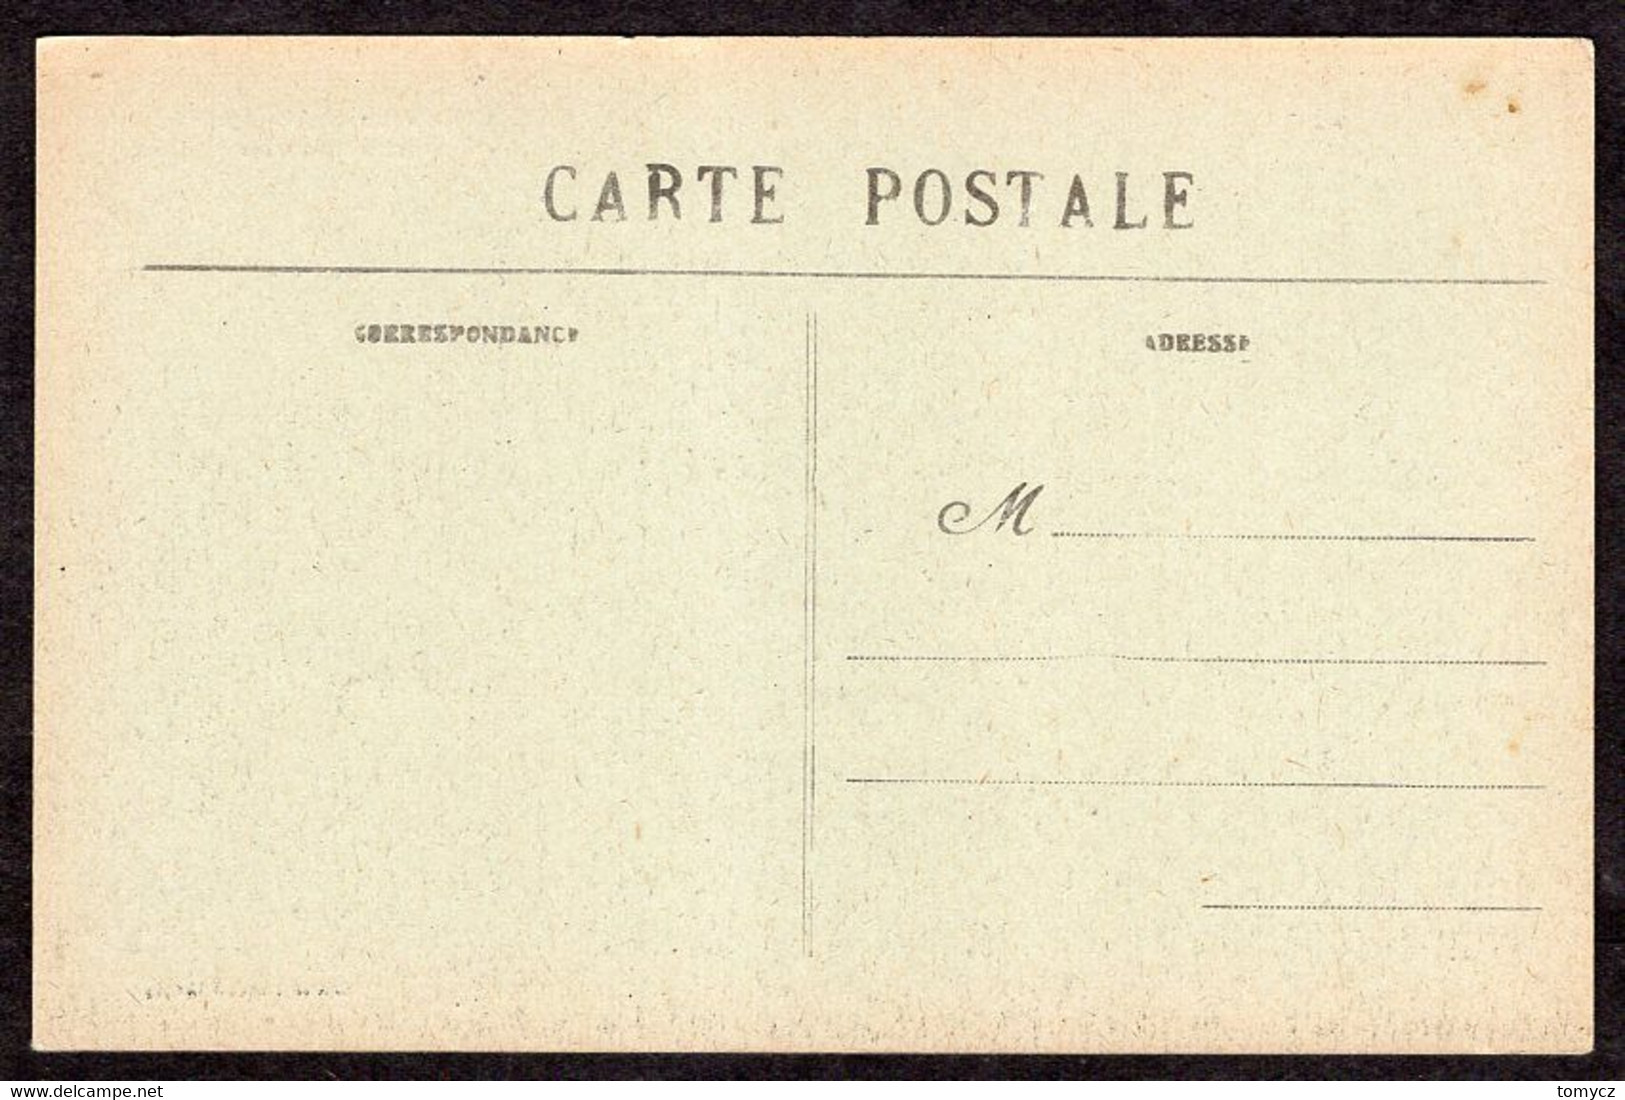 Postcard Entremmes - Port-du-Salut ... 191?-2?, Not Used - Entrammes